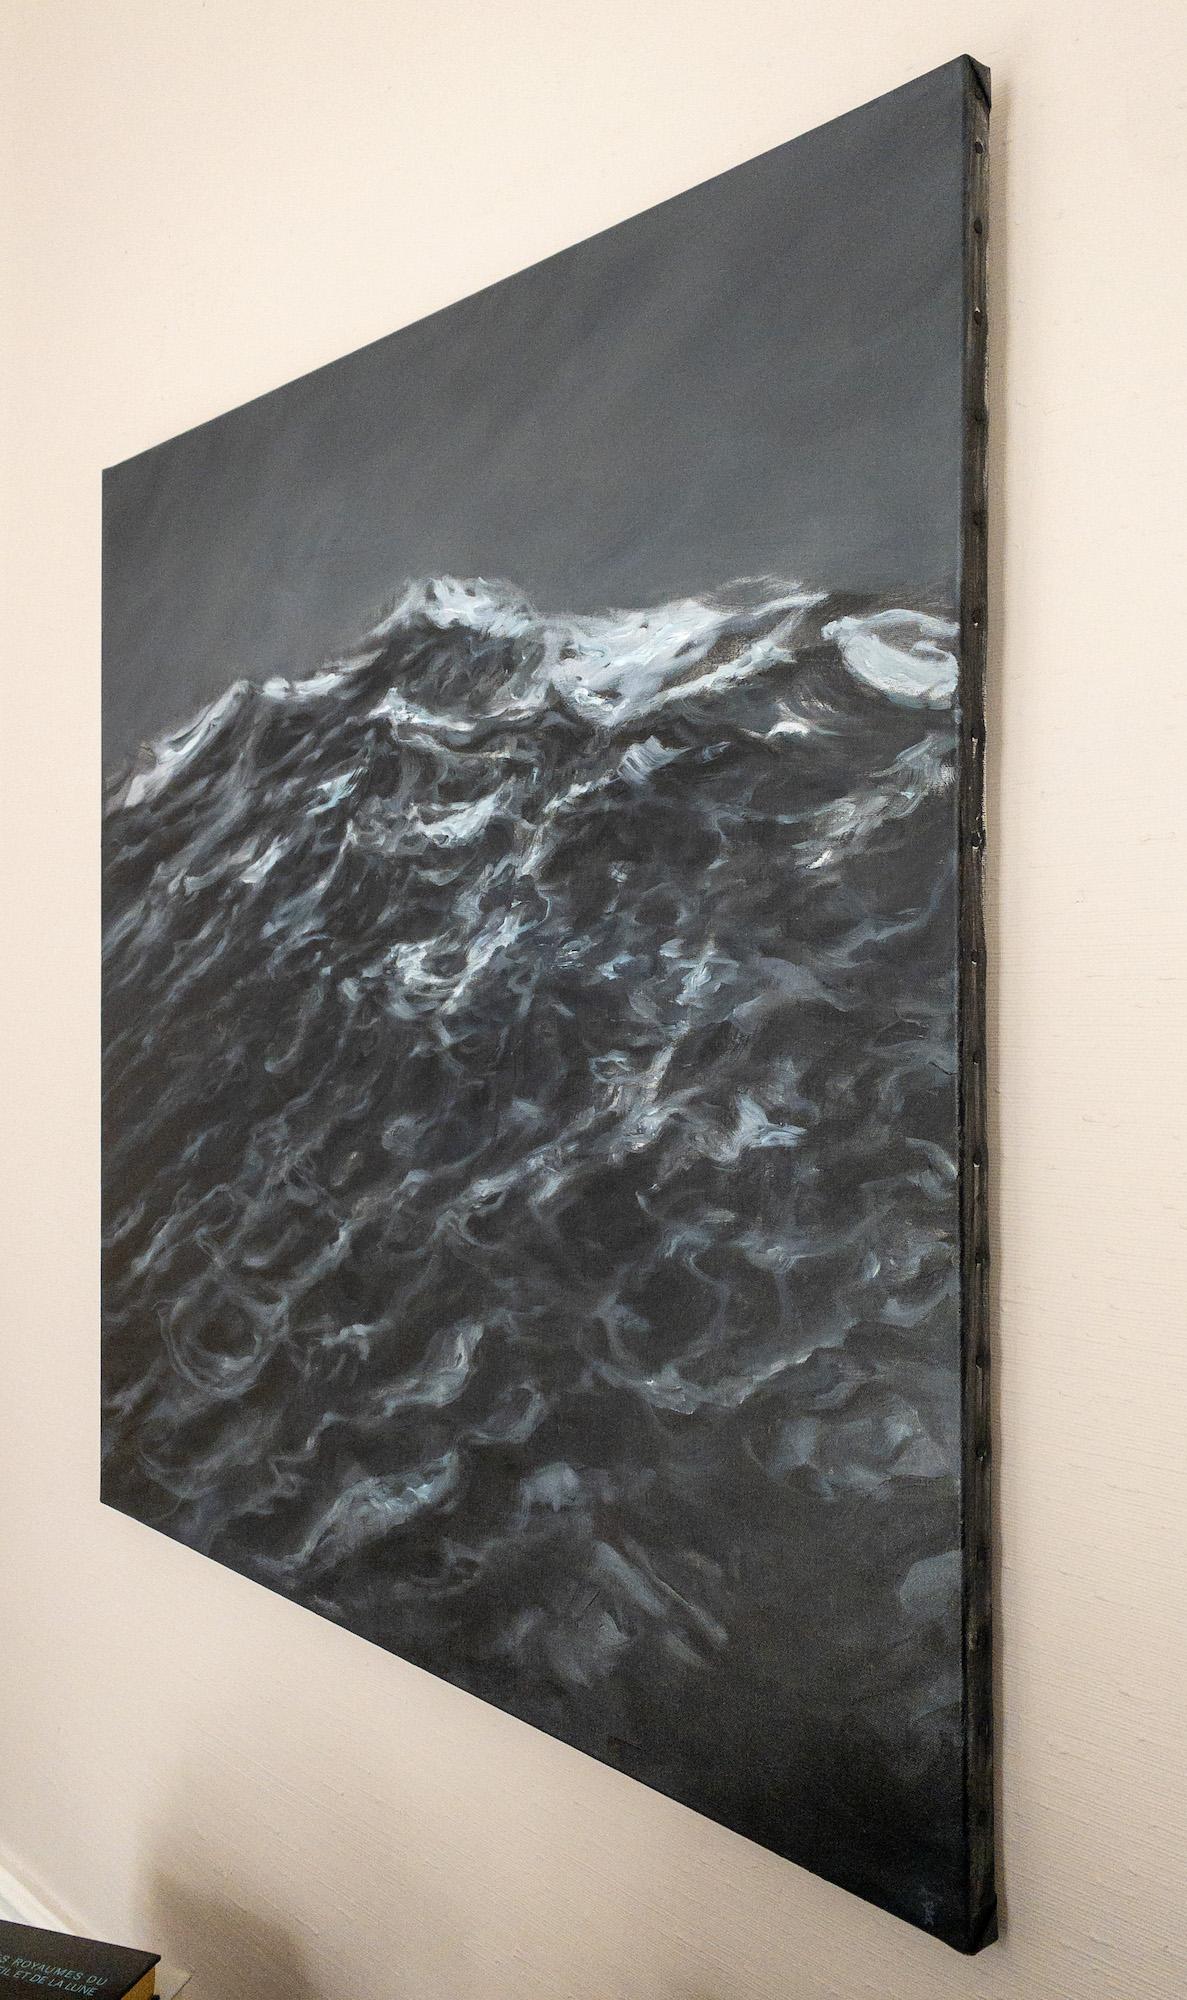 The Outburst by Franco Salas Borquez - Contemporary oil painting, seascape, wave For Sale 2